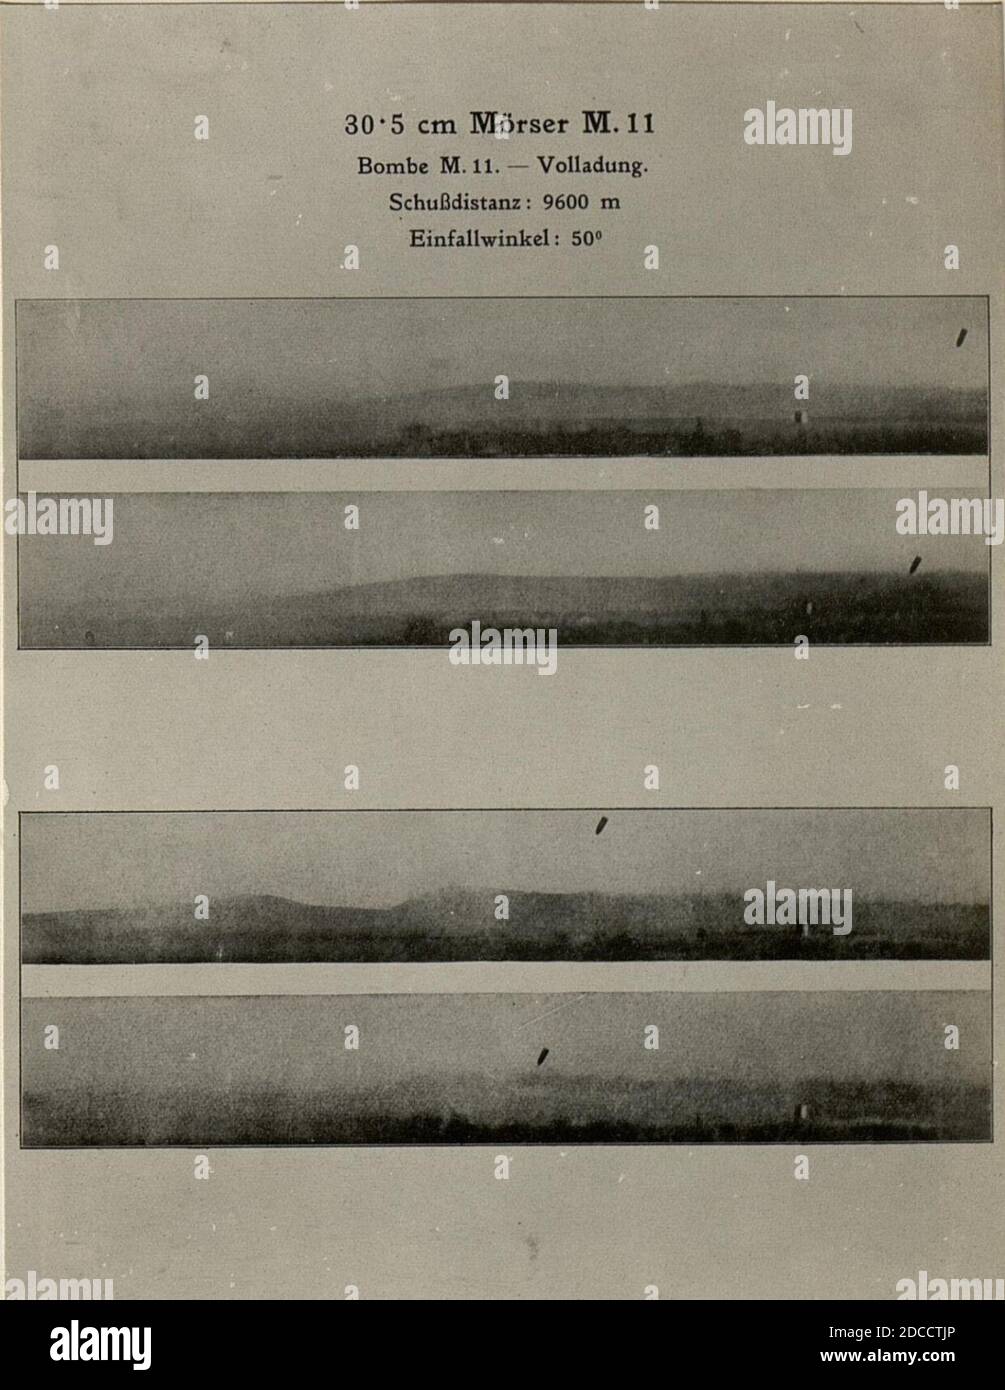 Kinematographische Aufnahme einer 30.5 cm Granate im Fluge zum Beweise der richtigen Stellung der Geschossachse zur Flugbahn. Aufgenommen am 27.3.1916. Stock Photo